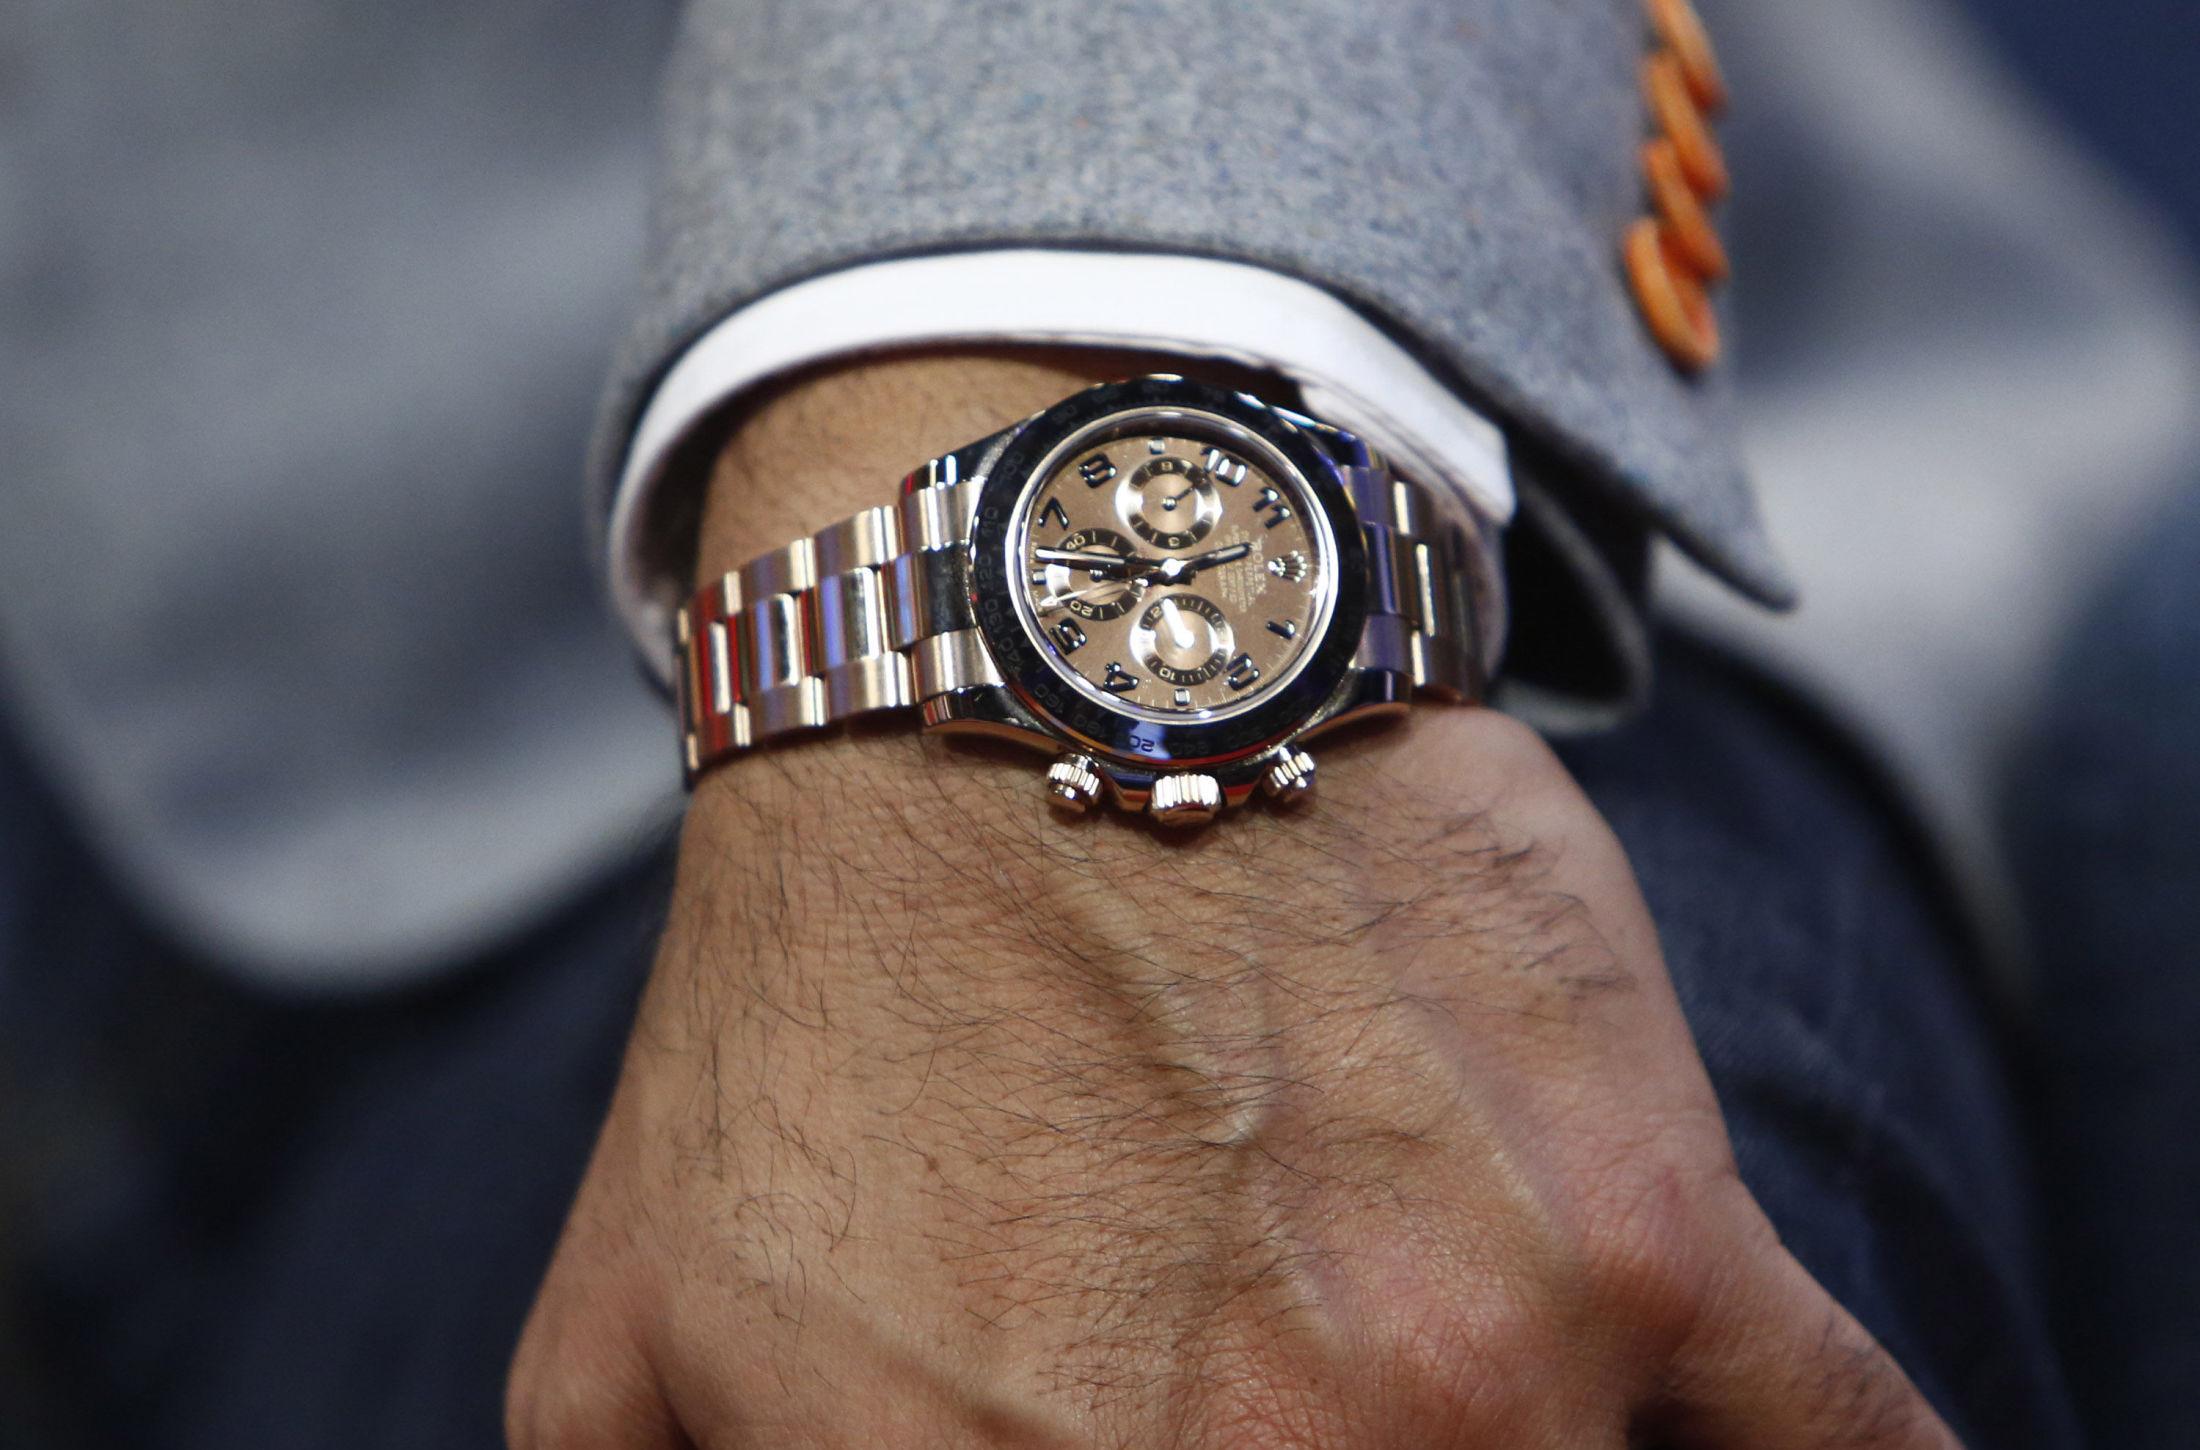 LUKSUSKLOKKE: Tollvesenet har flere eksempler på nordmenn som har handlet dyre klokker, som Rolex, i utlandet, og blitt tatt for å ikke ha fulgt tollreglene når de har kommet tilbake igjen. Foto: Getty Images